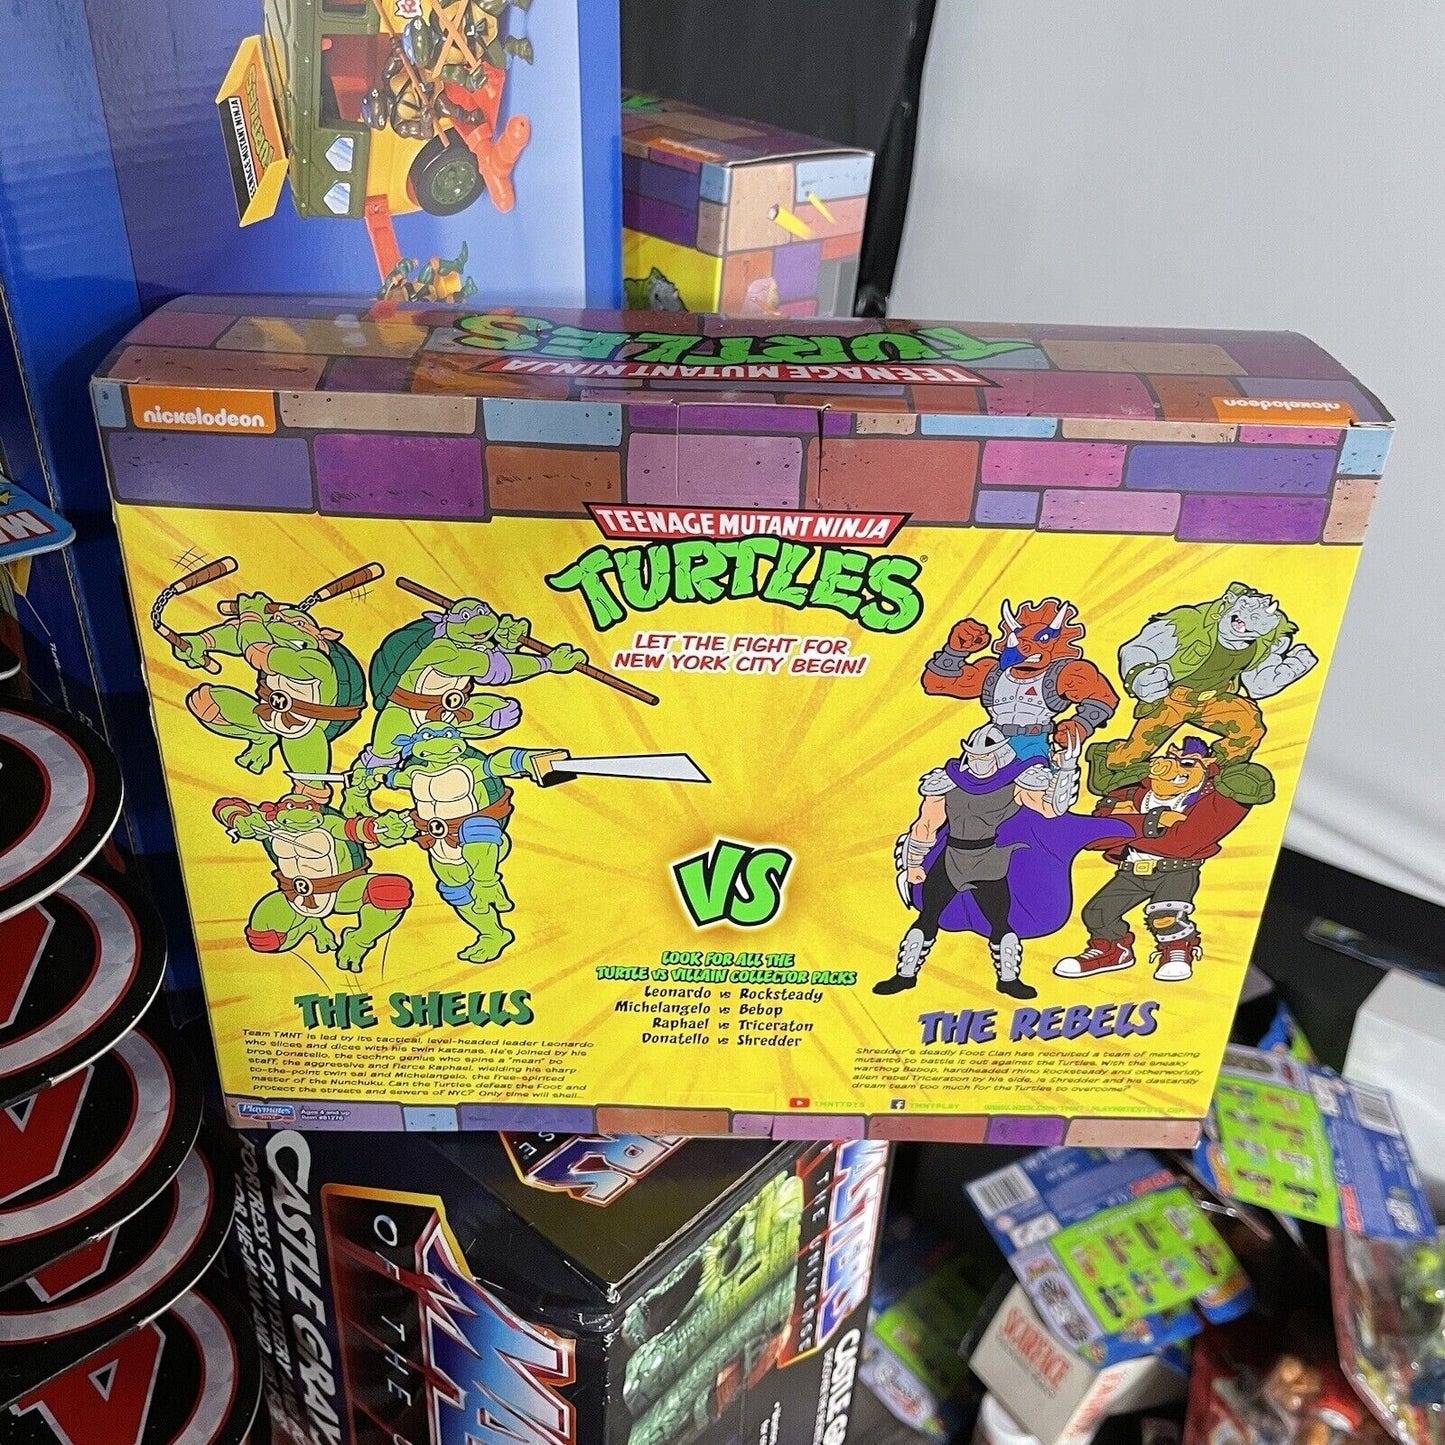 Teenage Mutant Ninja Turtles TMNT Leonardo vs Rocksteady Playmates 2 Pack Figure